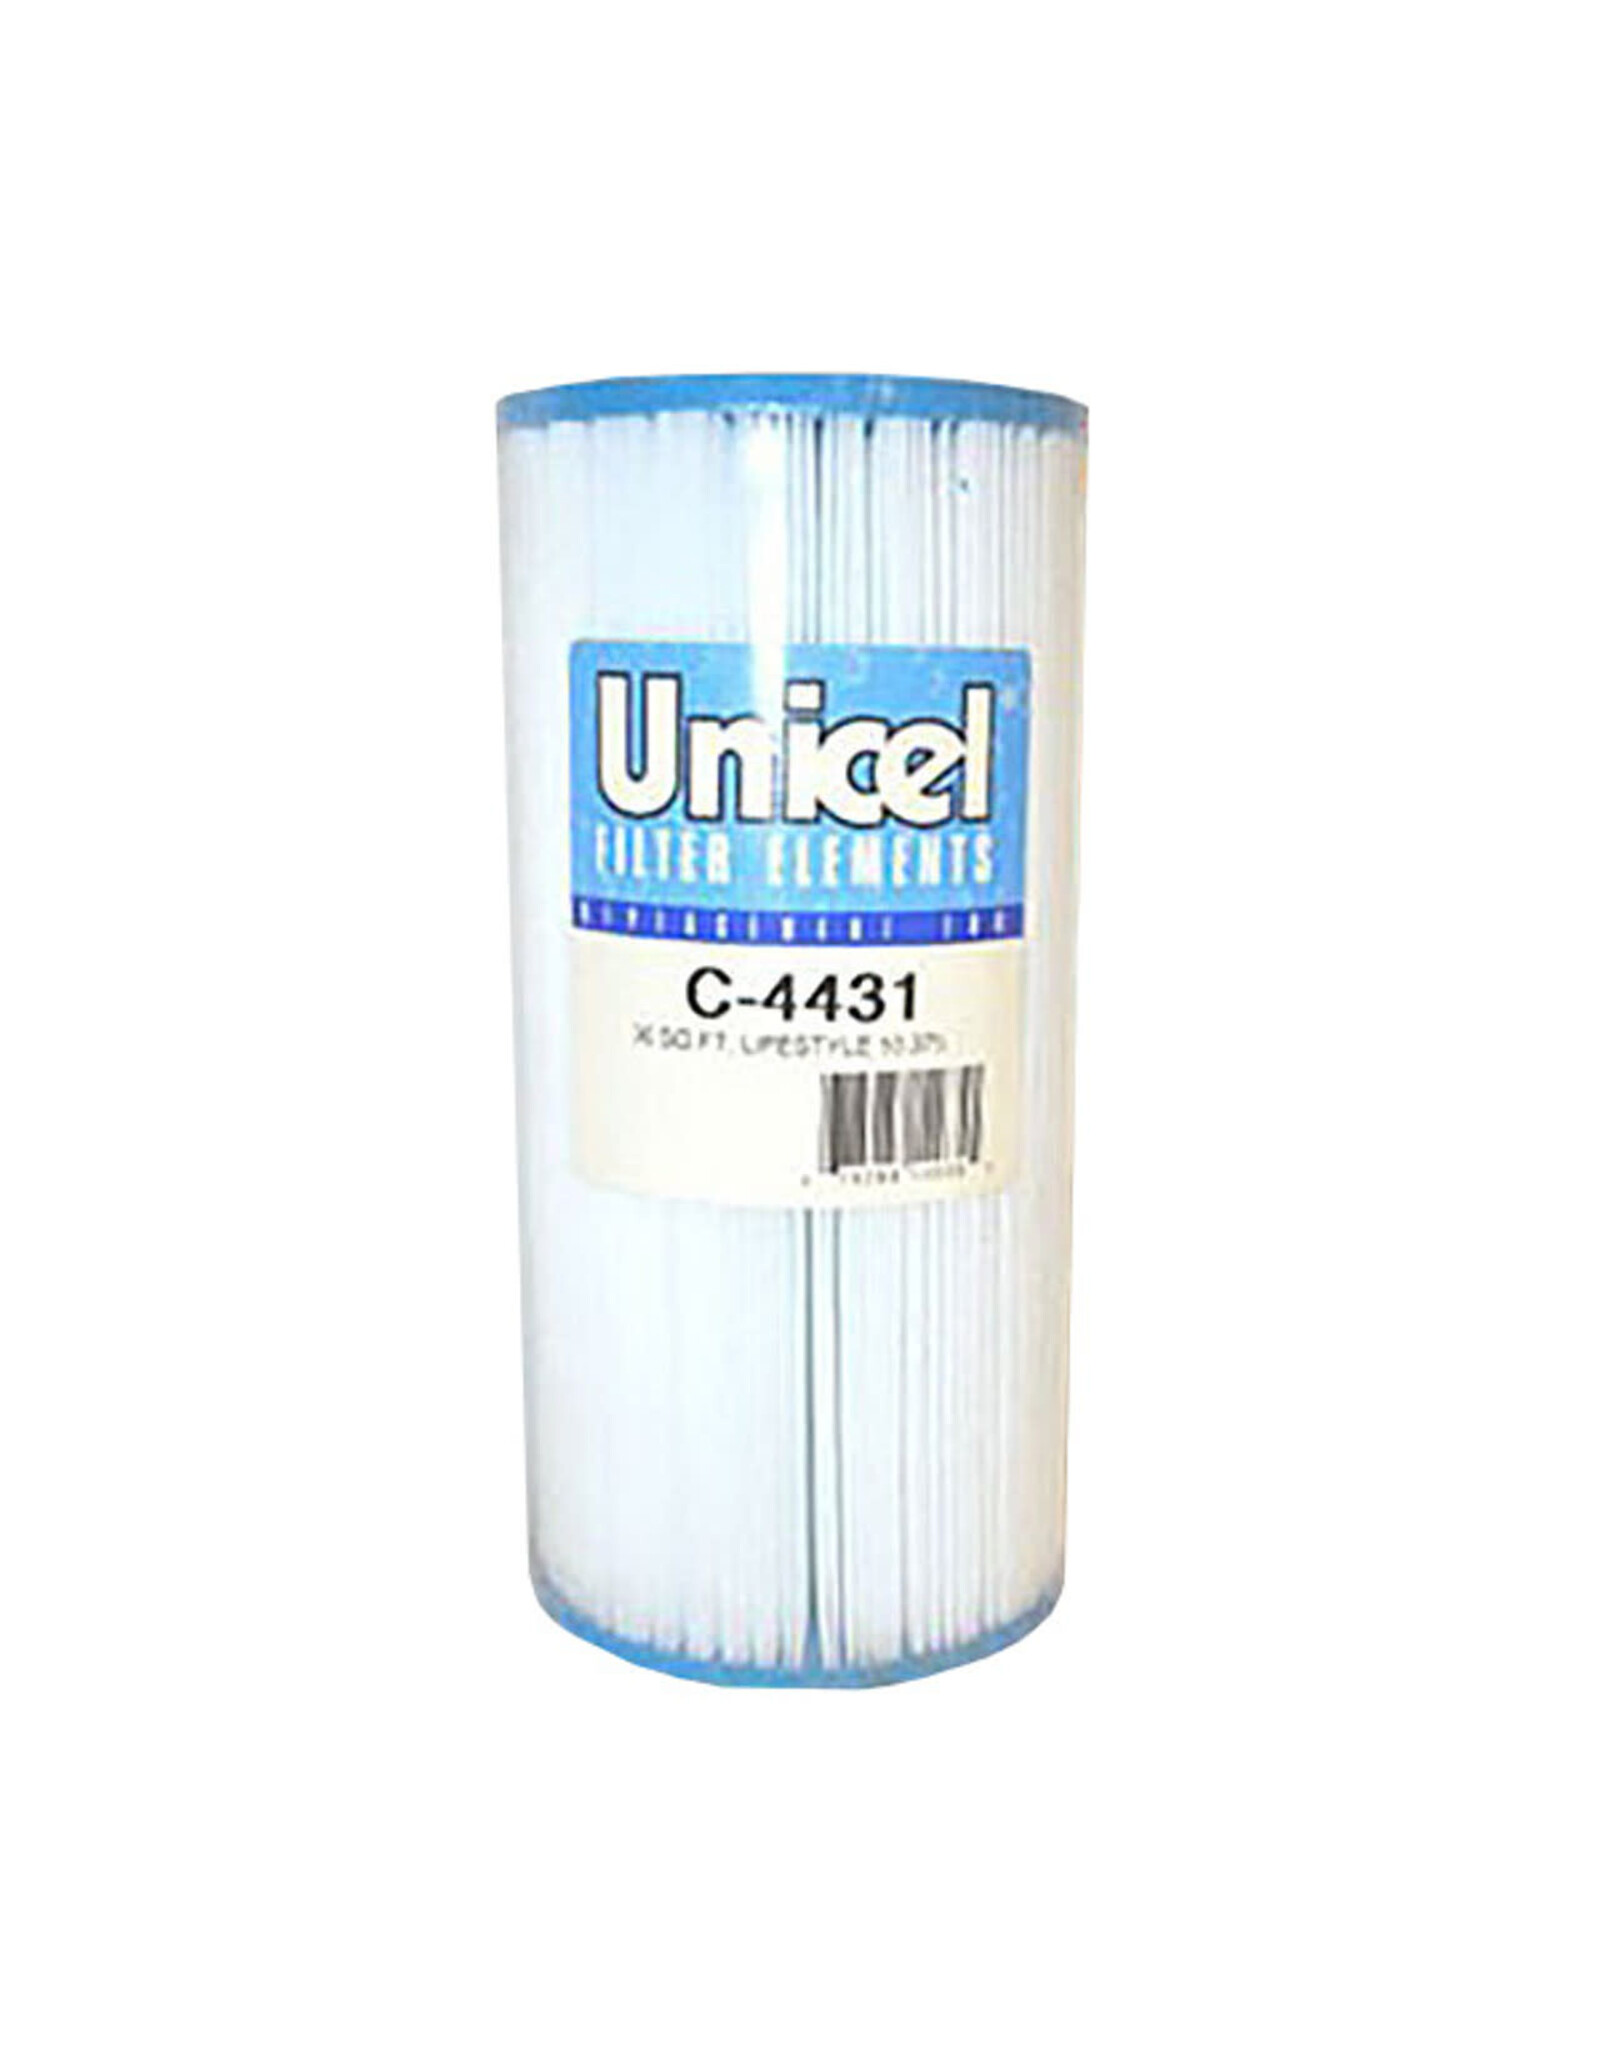 Unicel C-4431